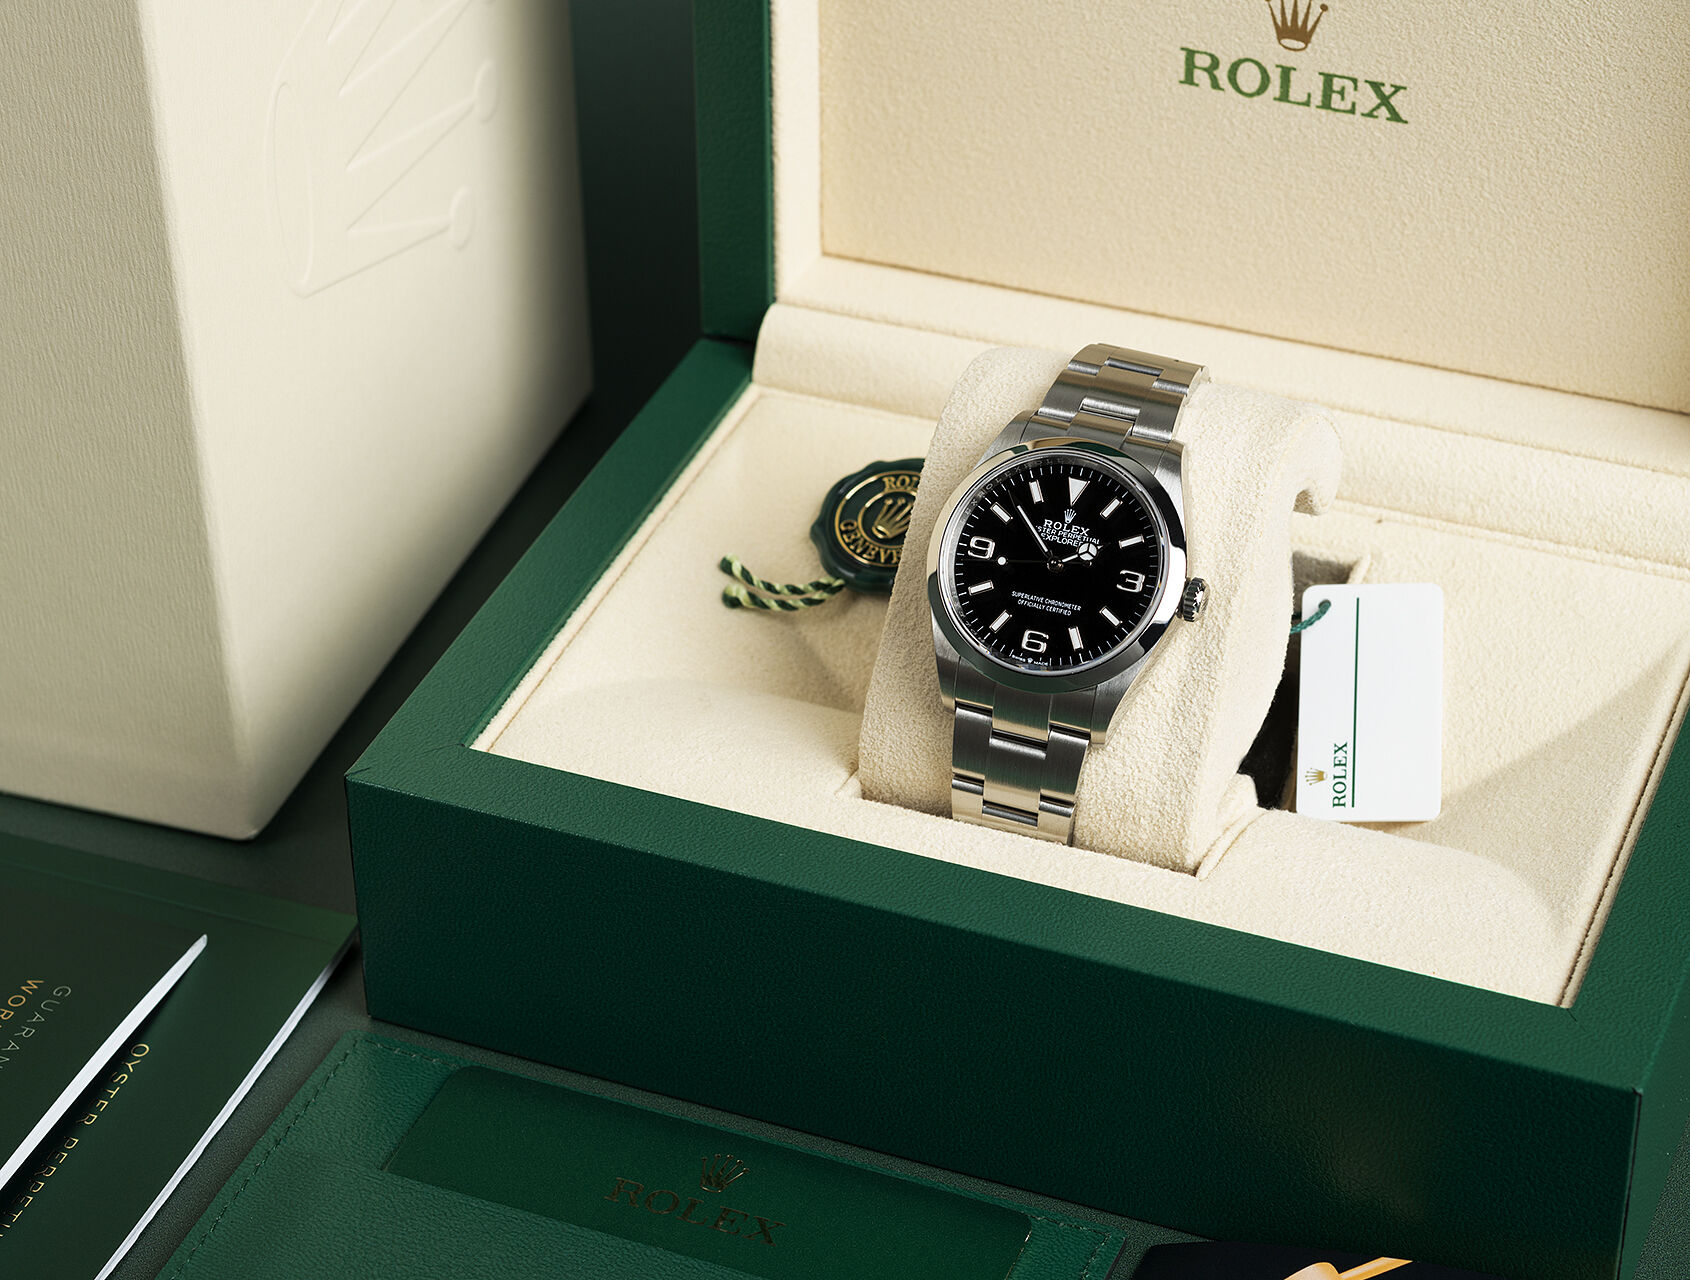 ref 124270 | 124270 - Box & Certificate | Rolex Explorer